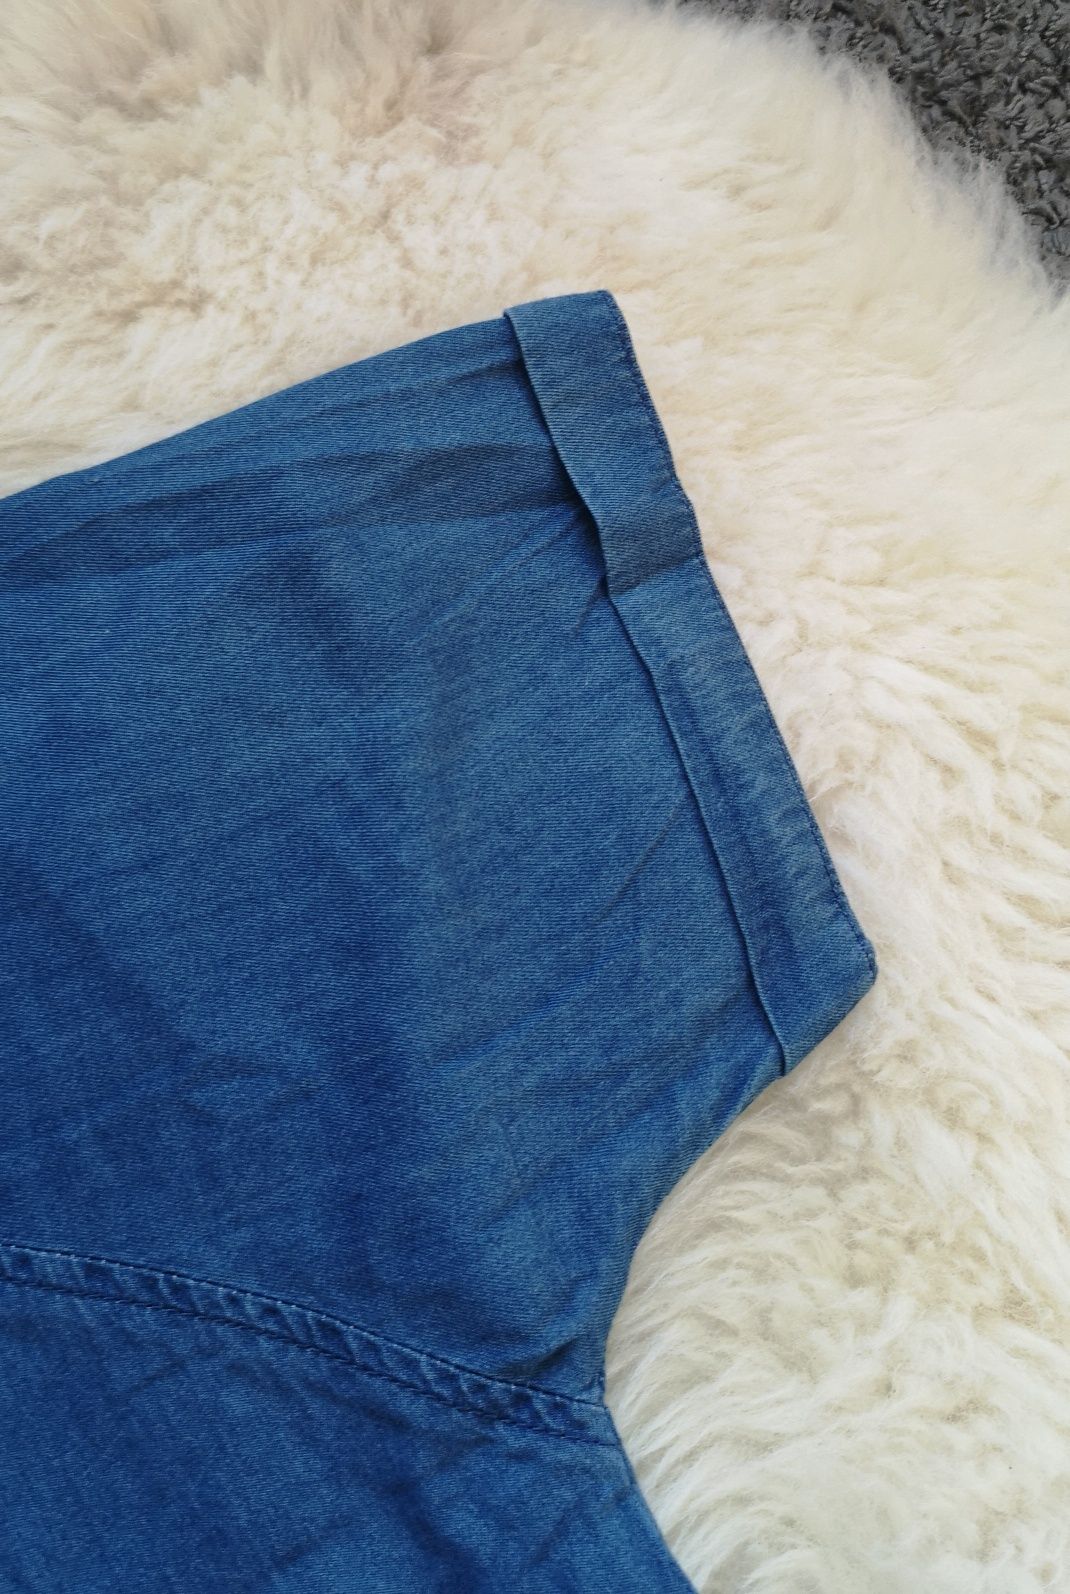 Damska sukienka jeans | MOHITO | r. 38